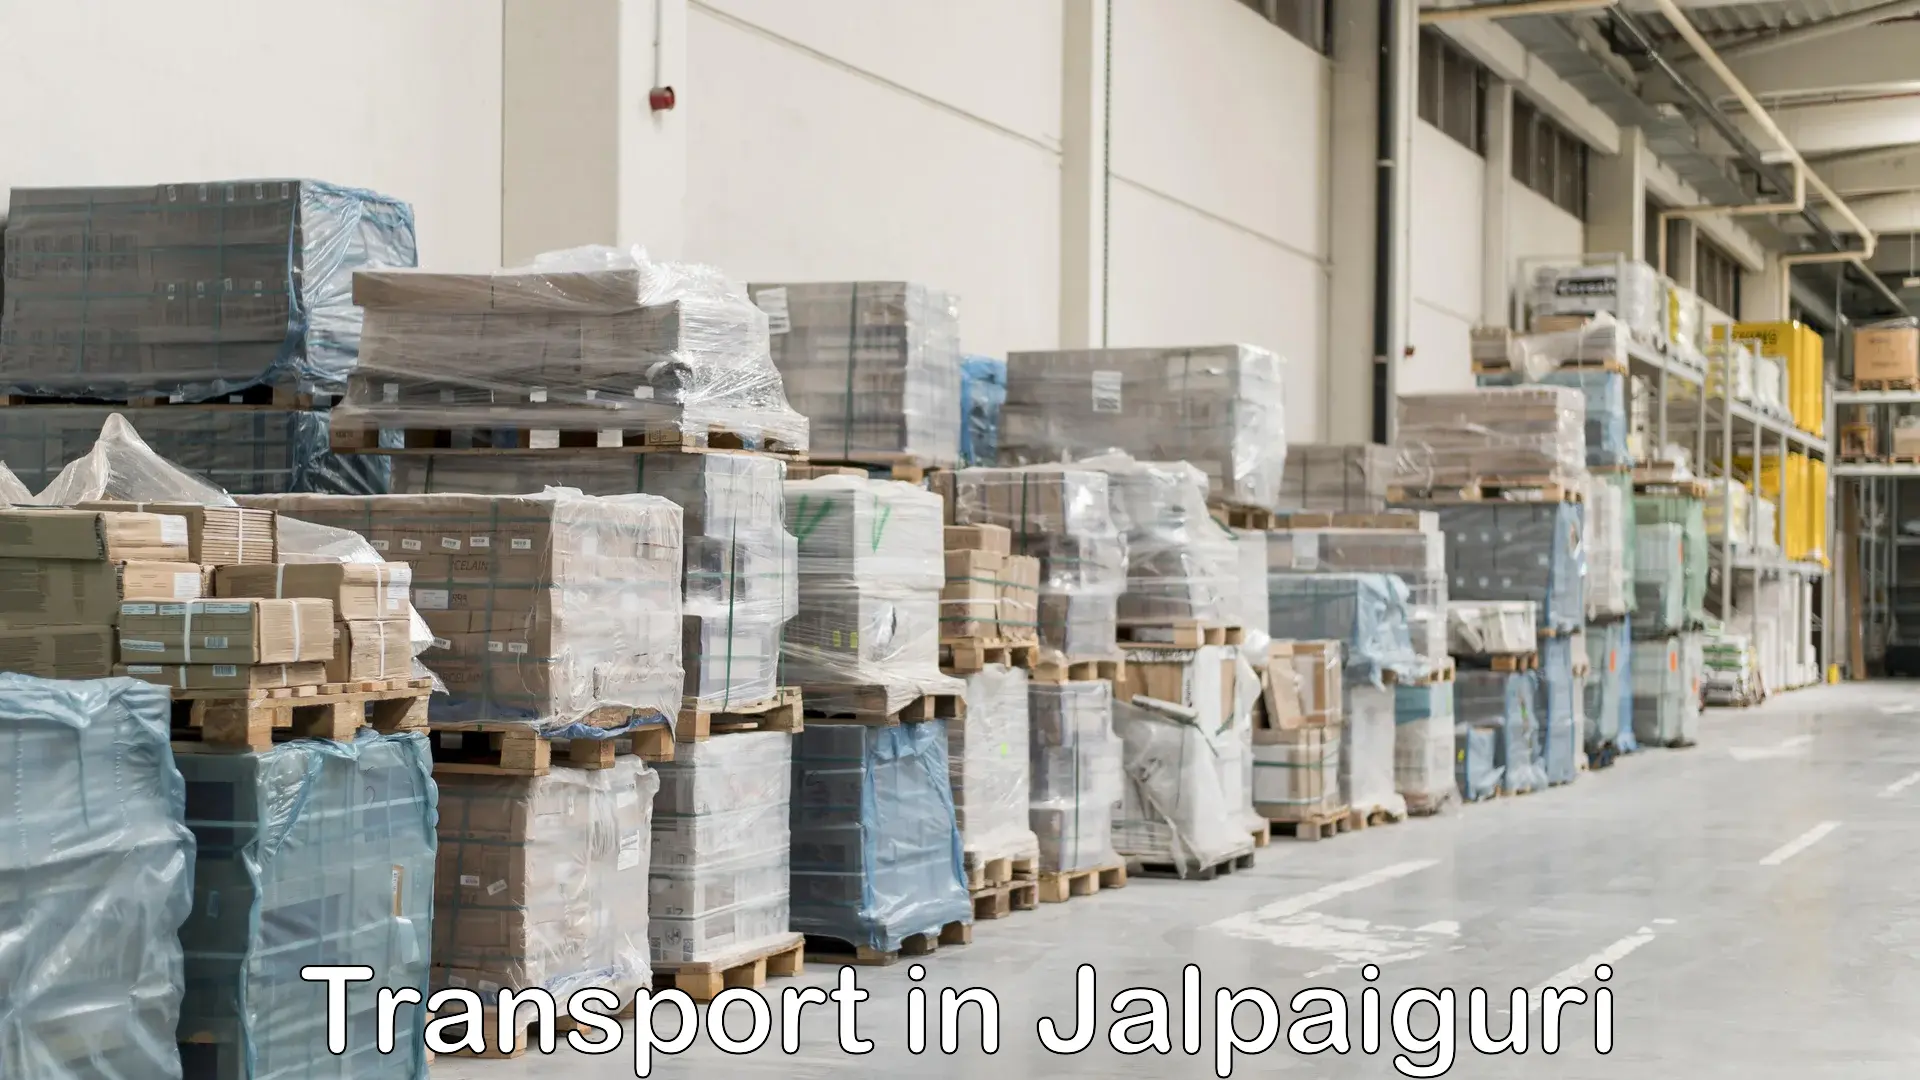 Intercity goods transport in Jalpaiguri